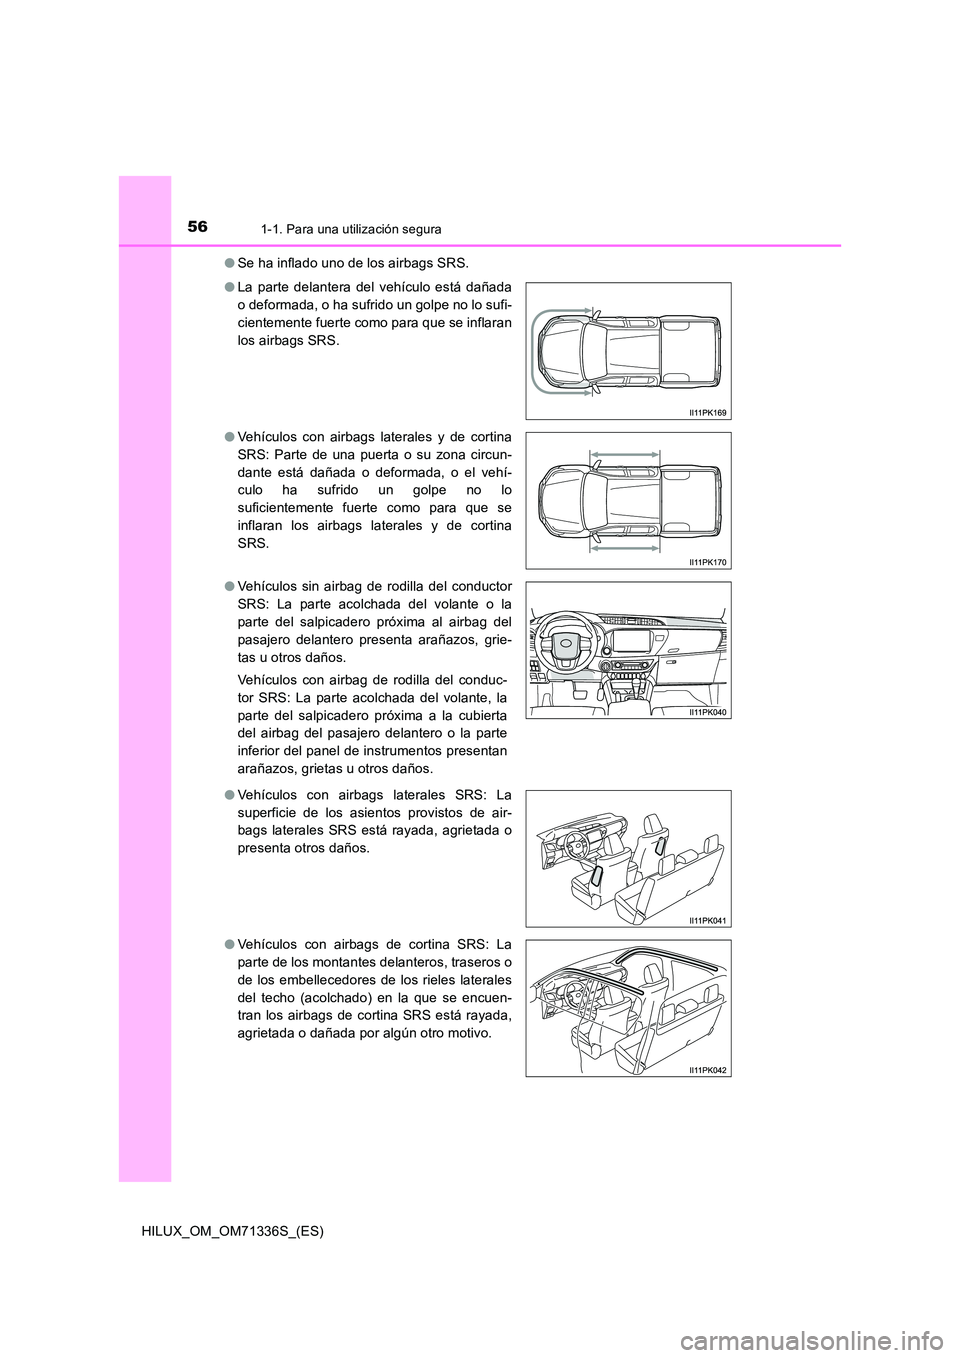 TOYOTA HILUX 2022  Manual del propietario (in Spanish) 561-1. Para una utilización segura
HILUX_OM_OM71336S_(ES) 
�O Se ha inflado uno de los airbags SRS. 
�O La parte delantera del vehículo está dañada 
o deformada, o ha sufrido un golpe no lo sufi-
